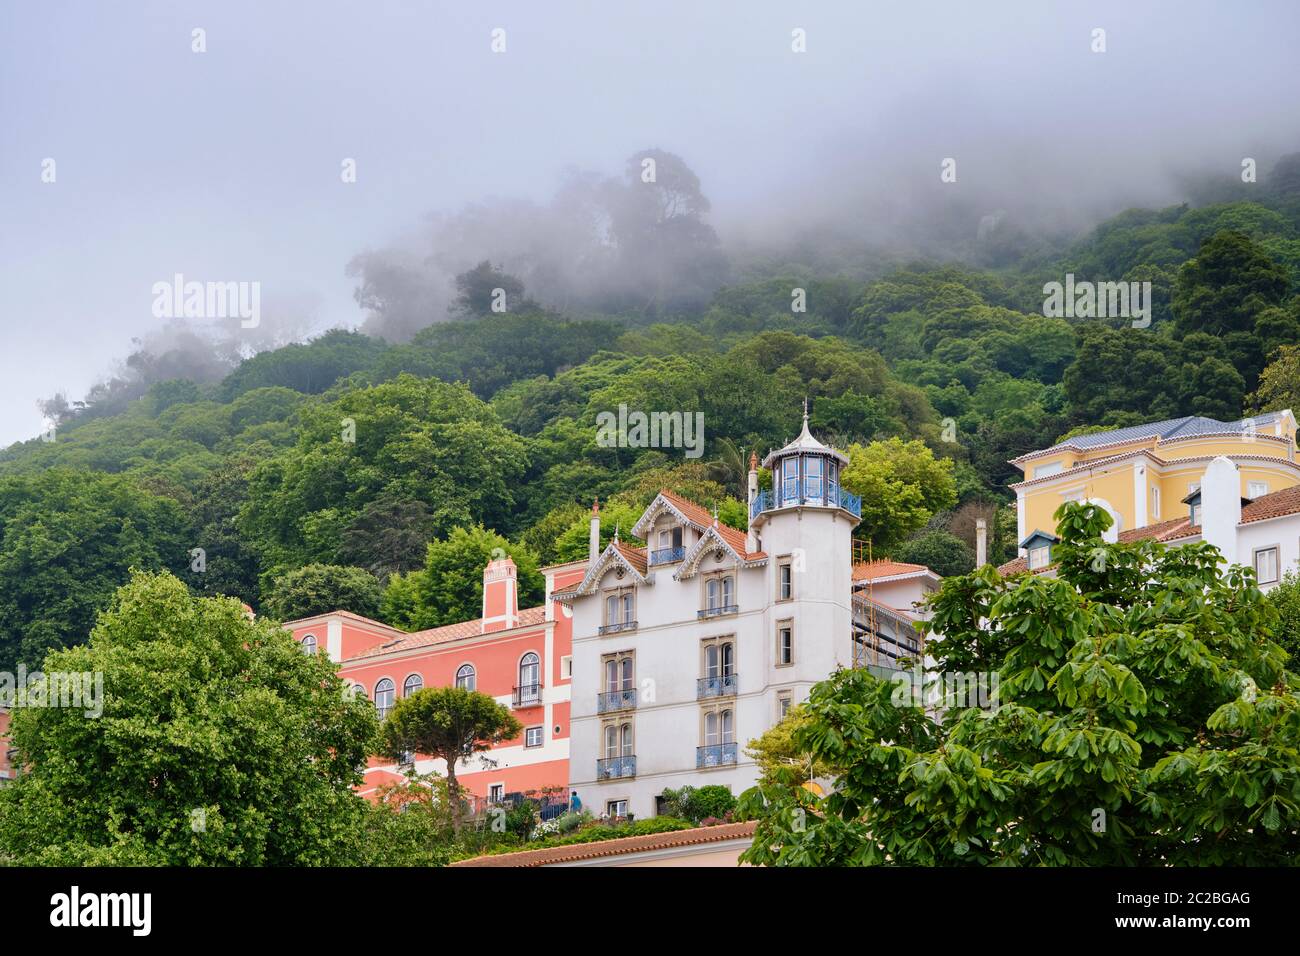 Vieille ville de Sintra. Un site classé au patrimoine mondial de l'UNESCO. Portugal Banque D'Images